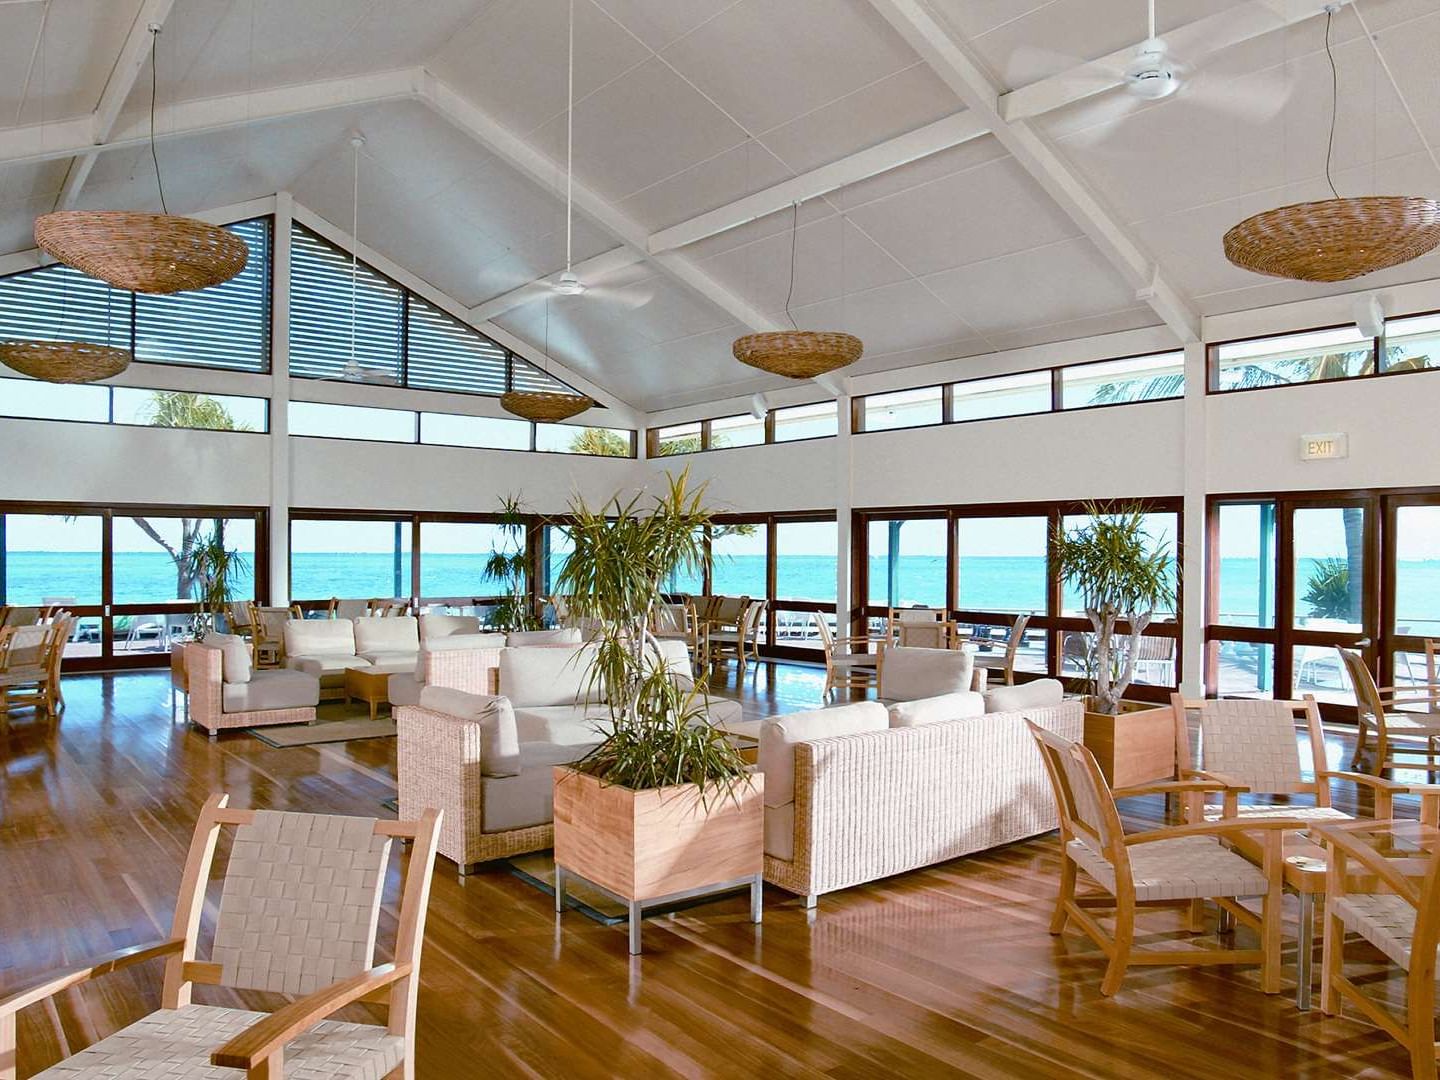 Interior of Pandanus Lounge at Heron Island Resort